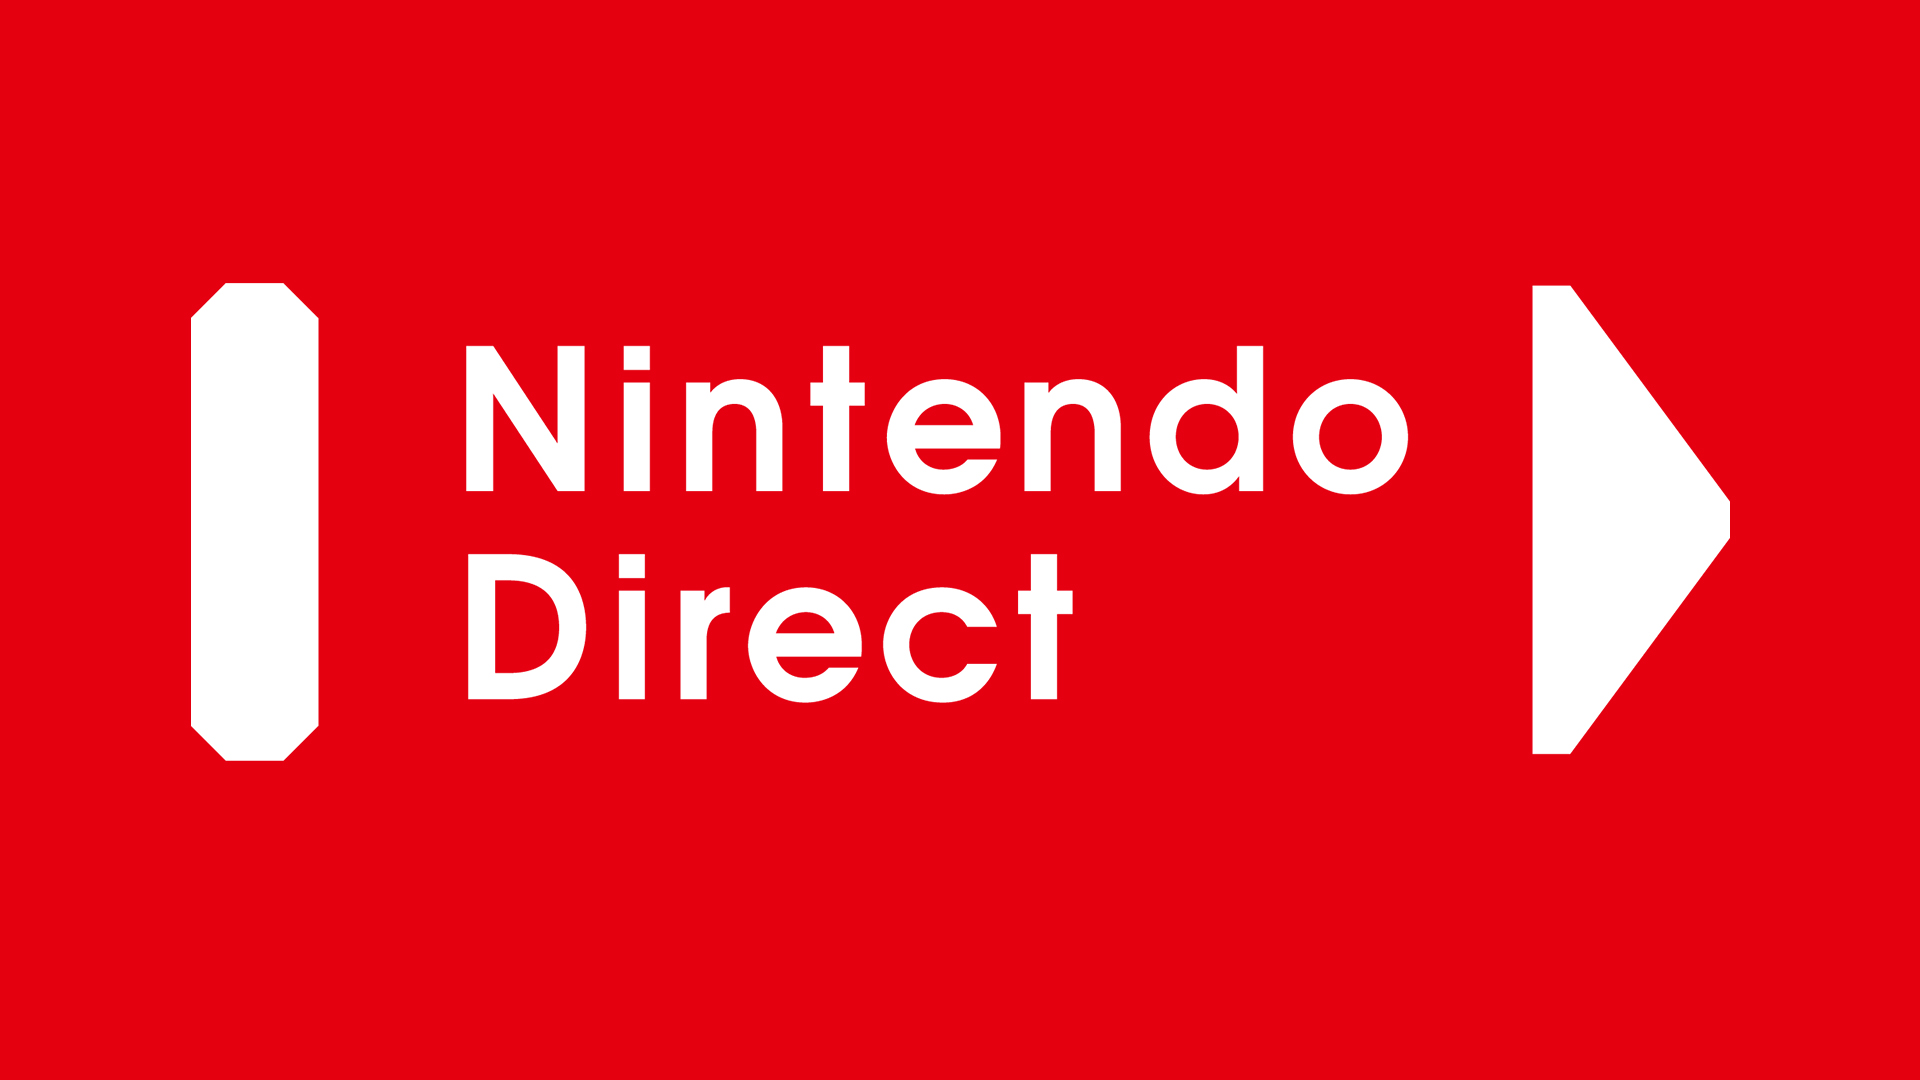 Nintendo Direct - No